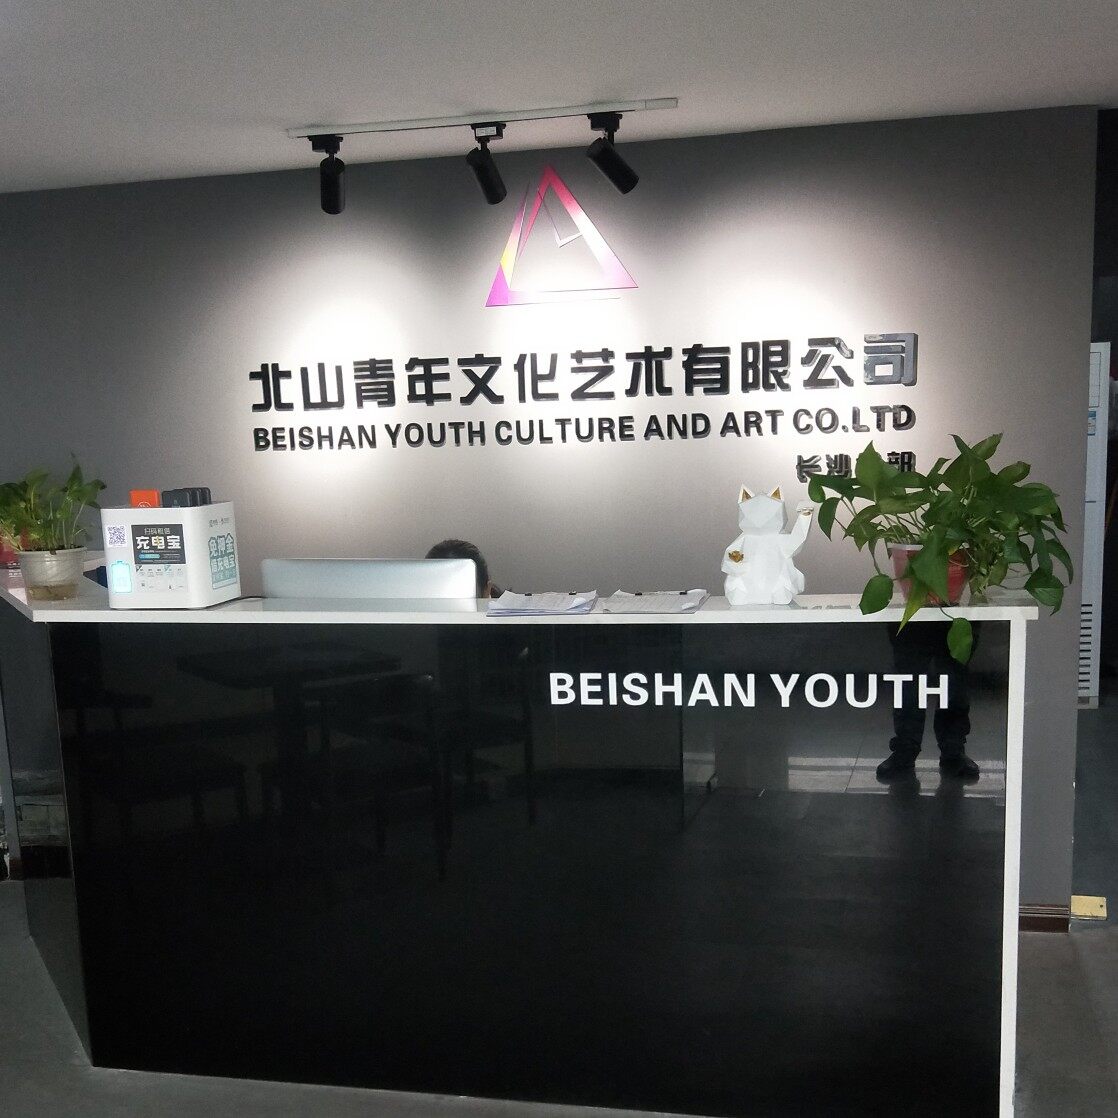 长沙北山青年文化艺术有限公司logo